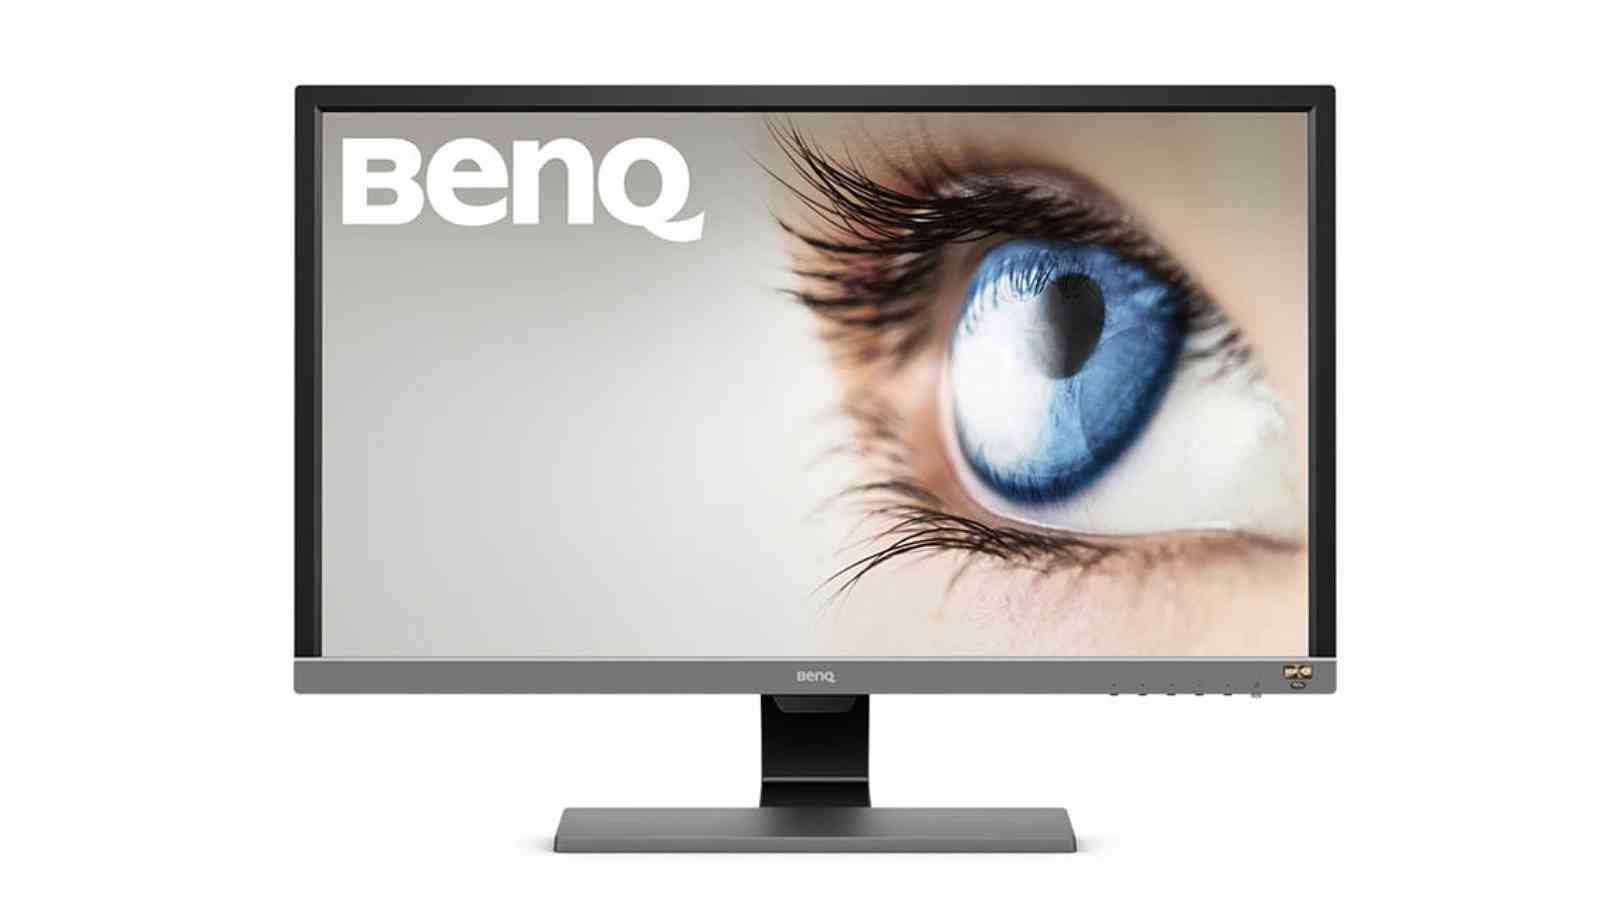 BenQ oznamuje svůj první 4K monitor s 1ms odezvou a B.I.+ technologií